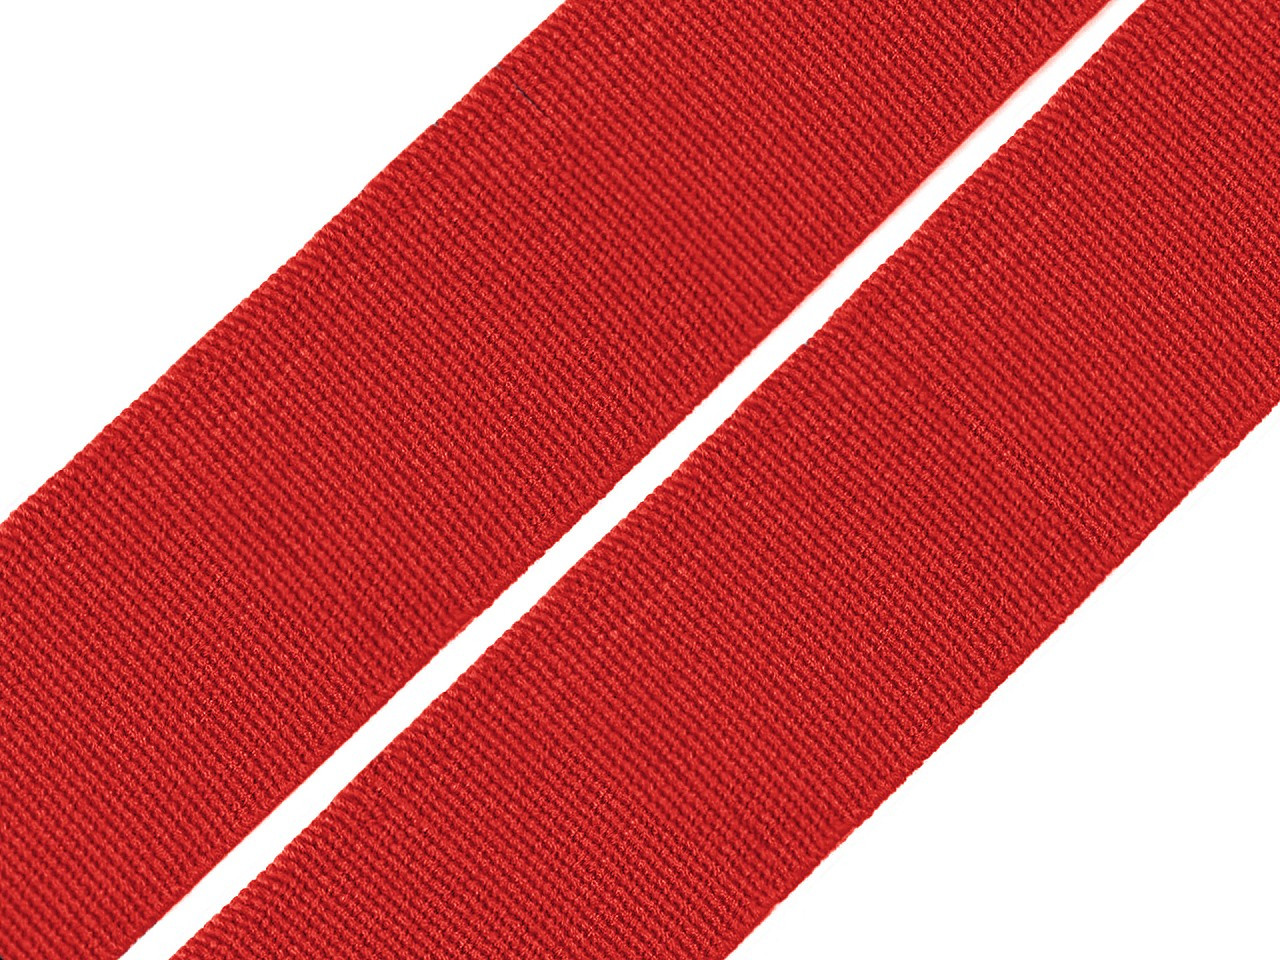 Pruženka hladká šíře 20 mm tkaná barevná, barva 7502 červená